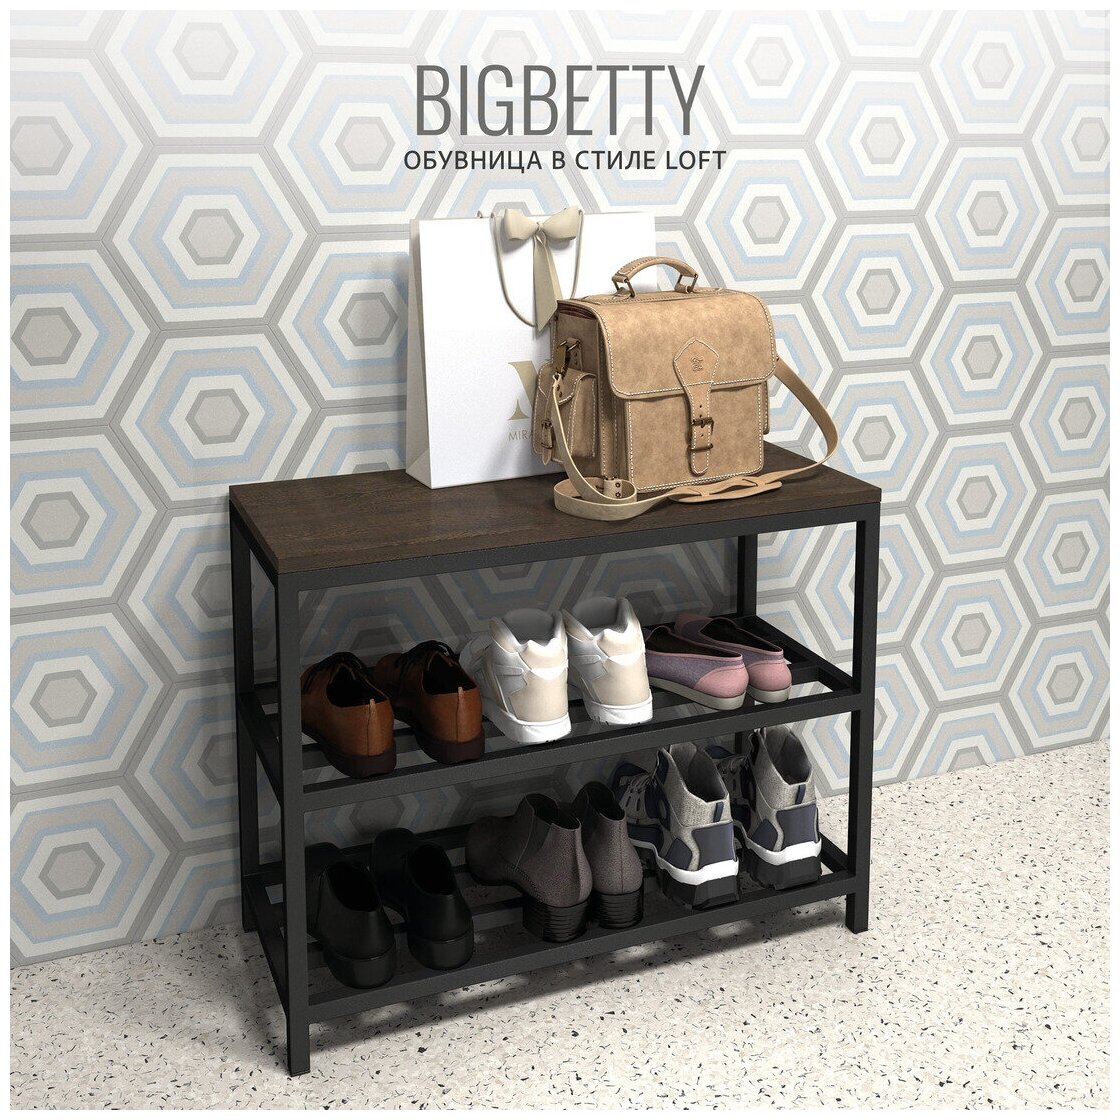 Обувница BIGBETTY loft, темно-коричневая, металлическая, банкетка для обуви, полка обувная, 70х30х55см, Гростат - фотография № 1